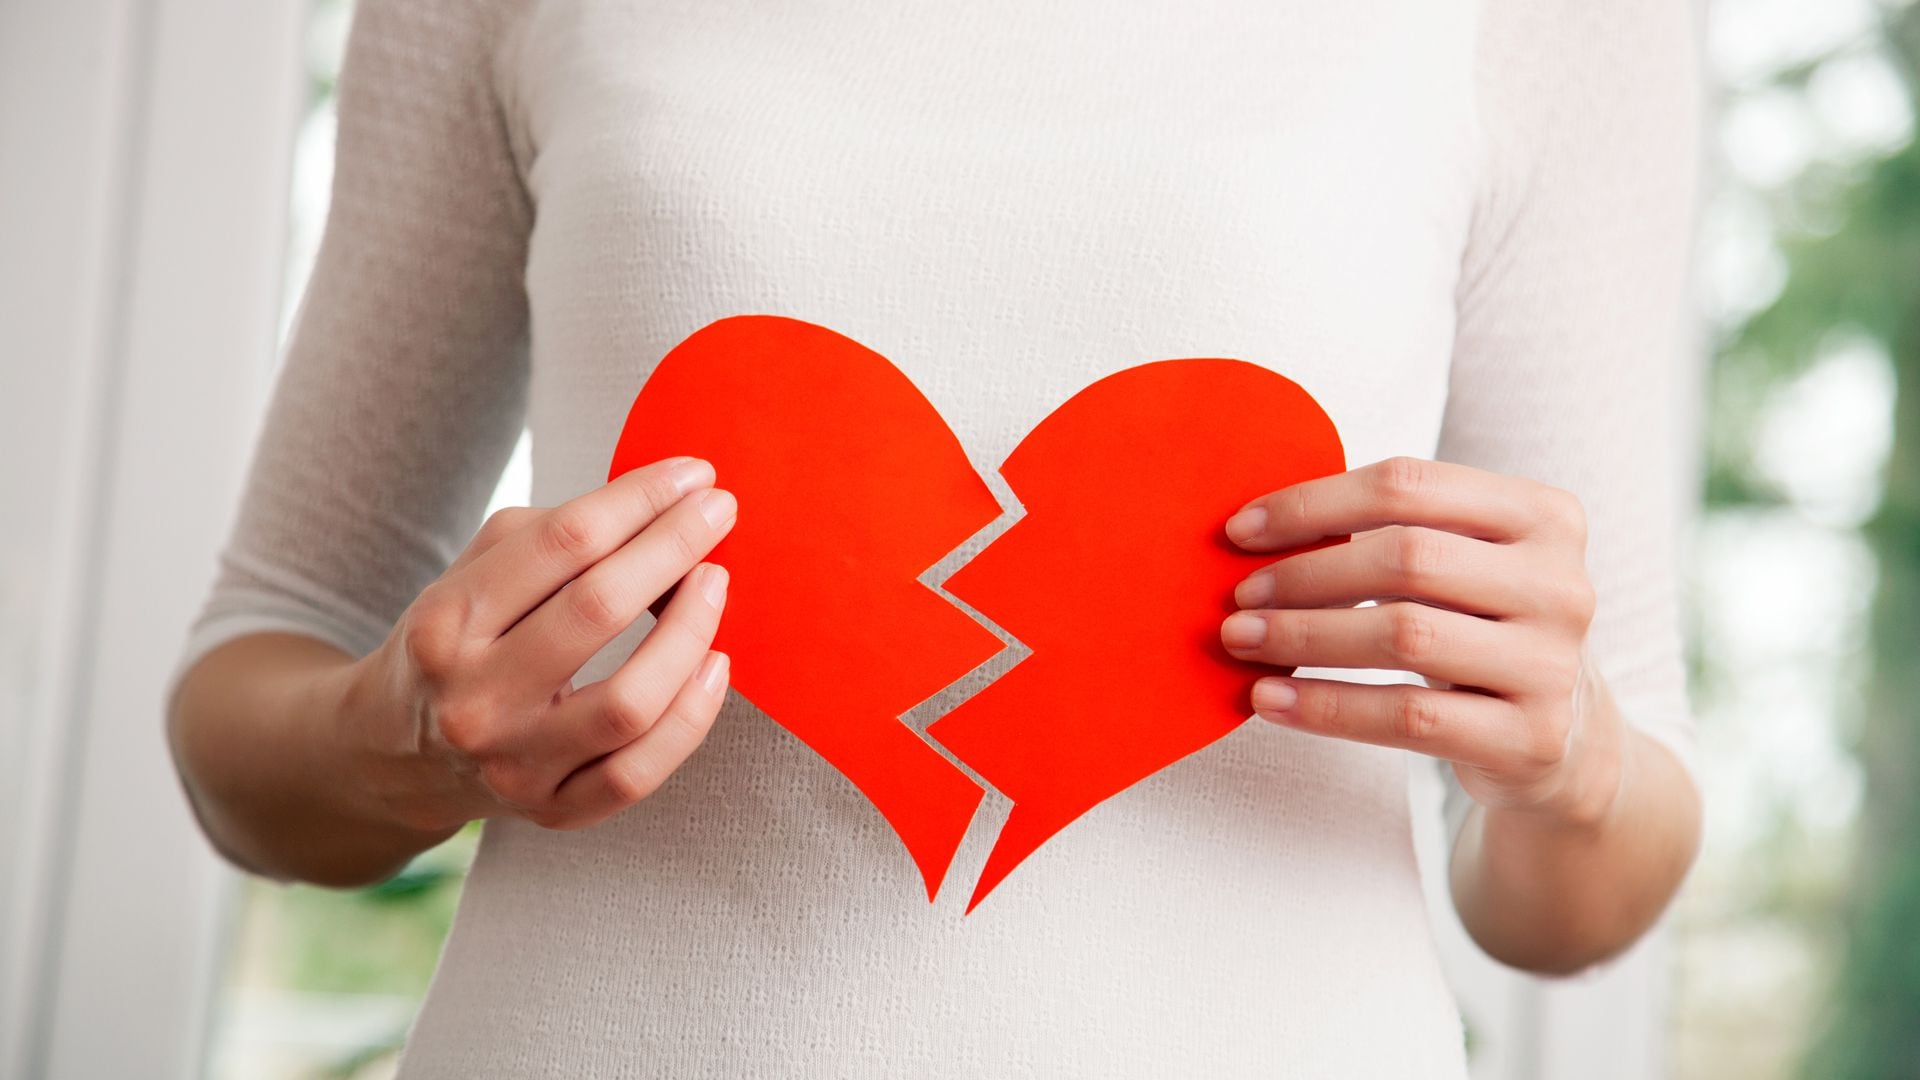 Mujeres: 1 de cada 3 muertes es por enfermedad cardiovascular
(iStock)